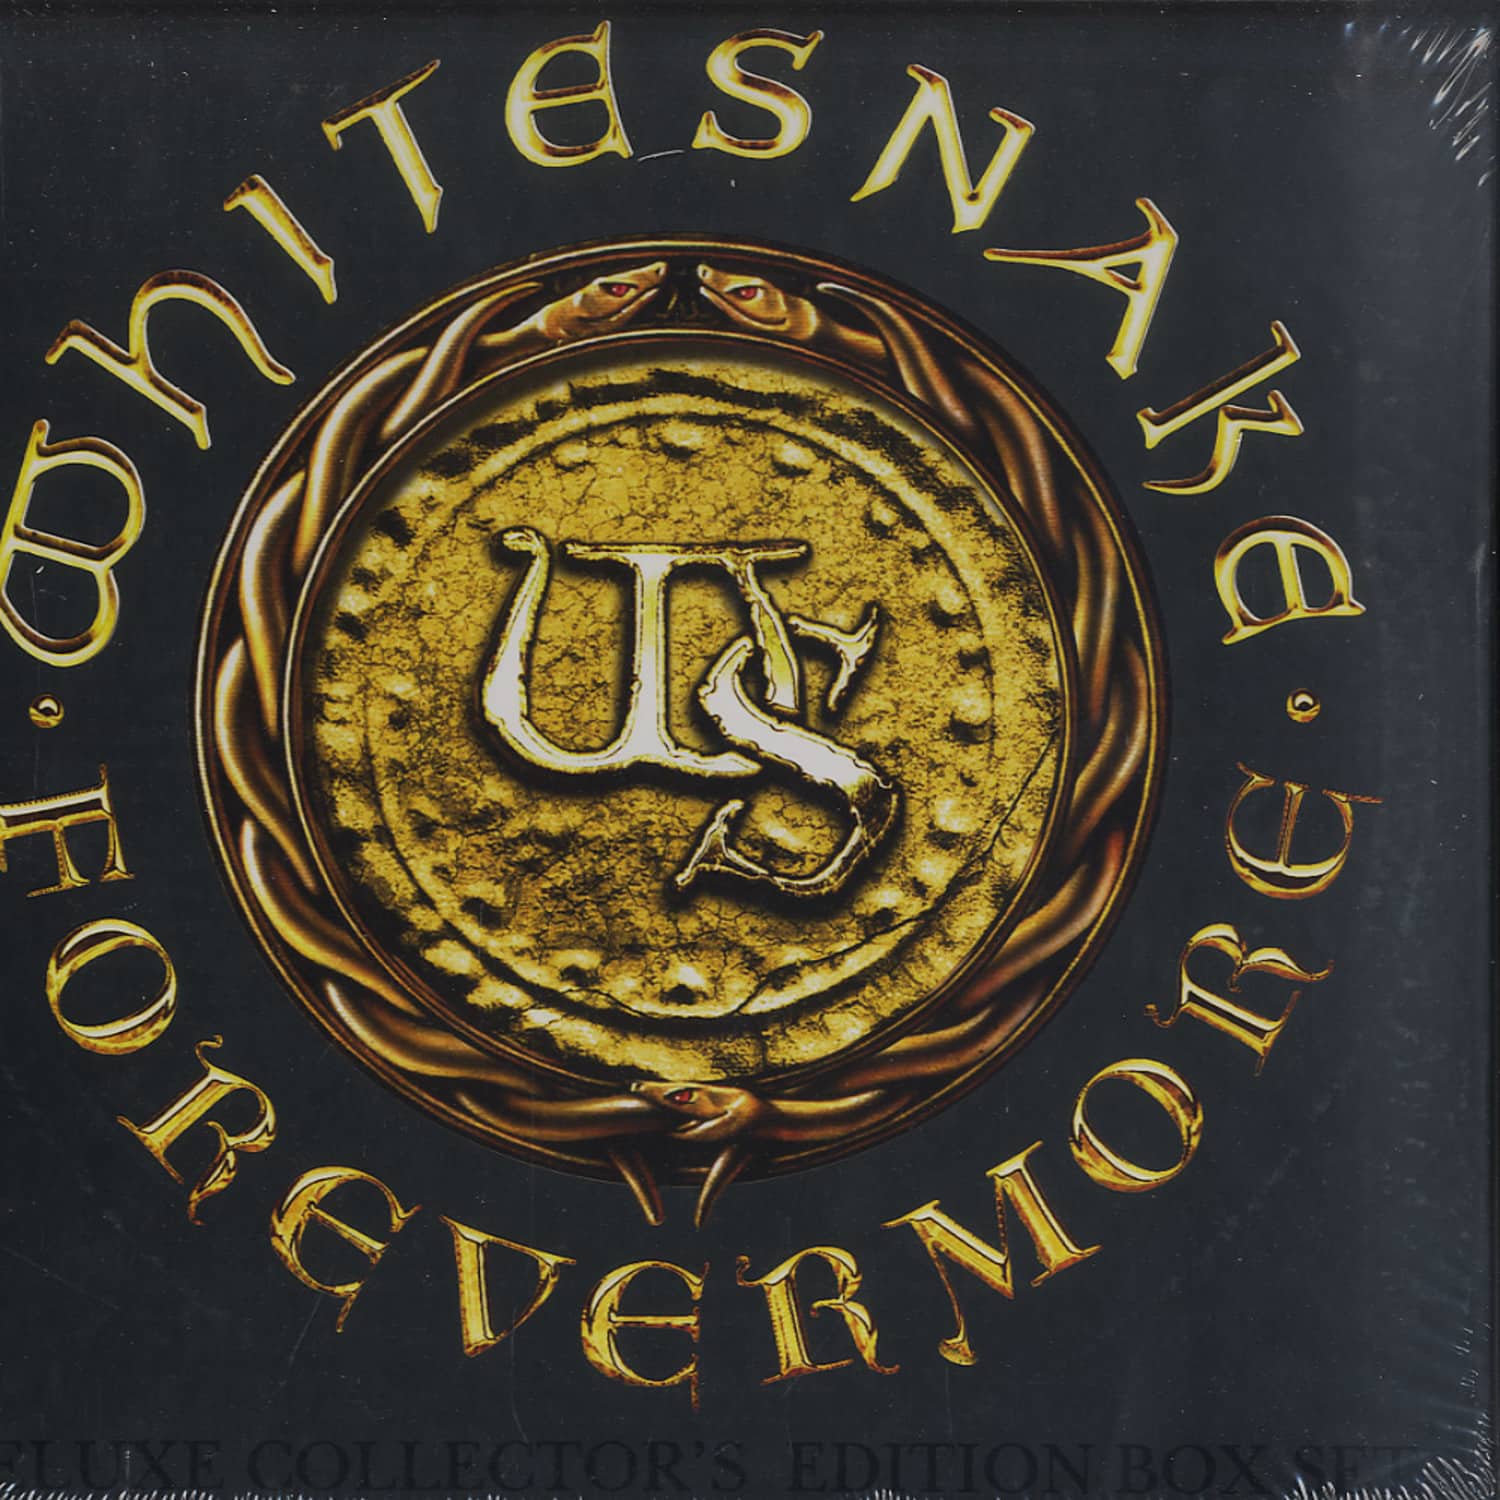 Whitesnake - FOREVERMORE 